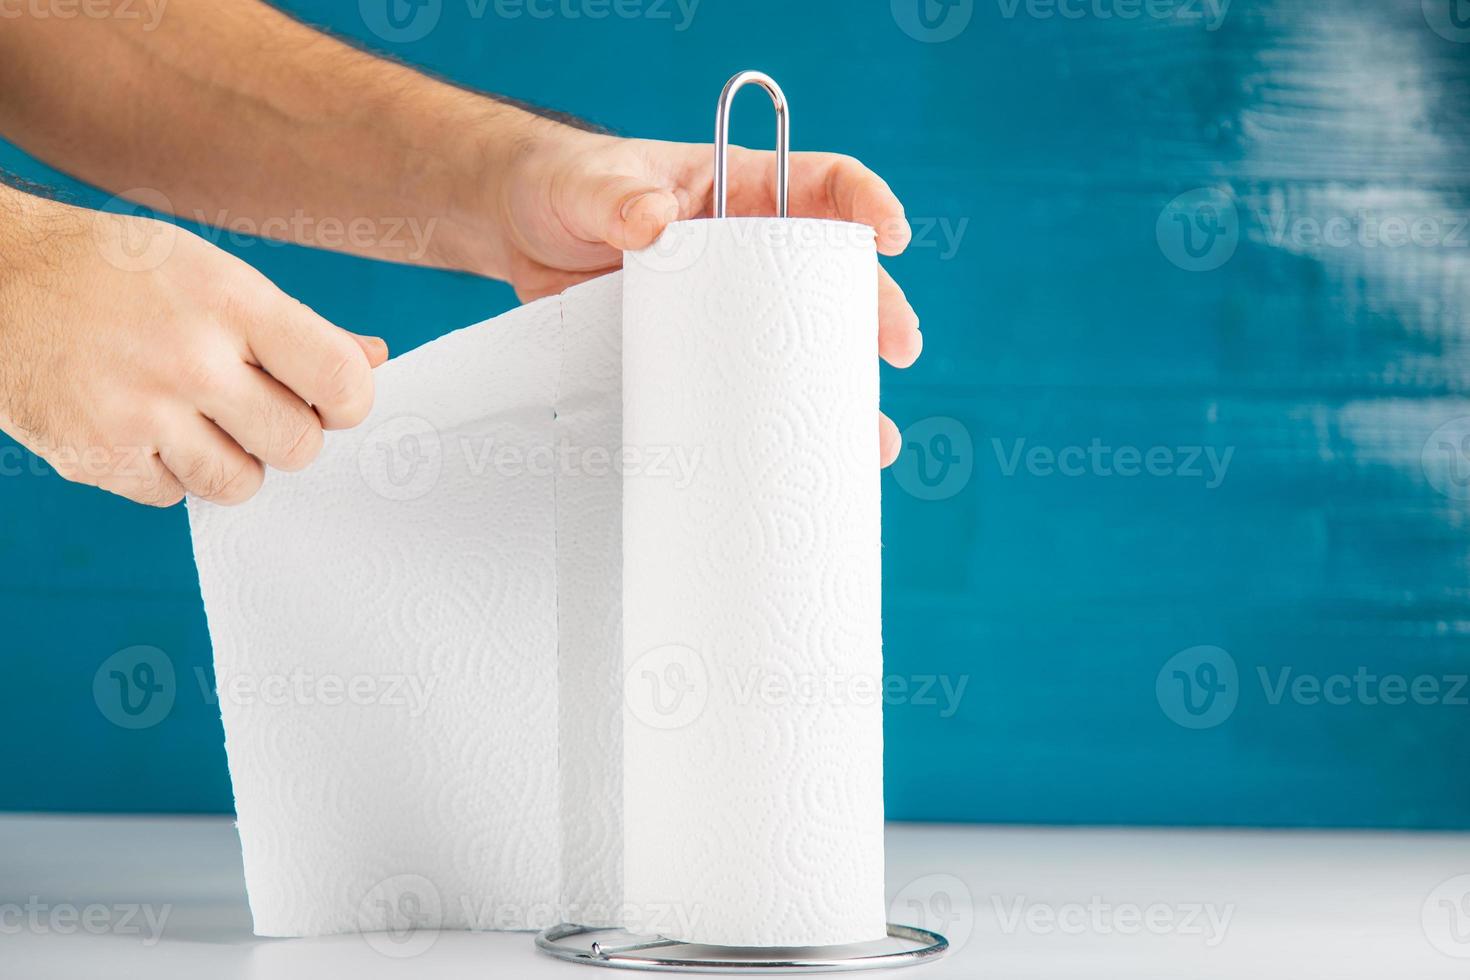 een anonieme hand scheurt een papieren handdoek af, de kopieerruimte van het hygiëneconcept omvat. foto